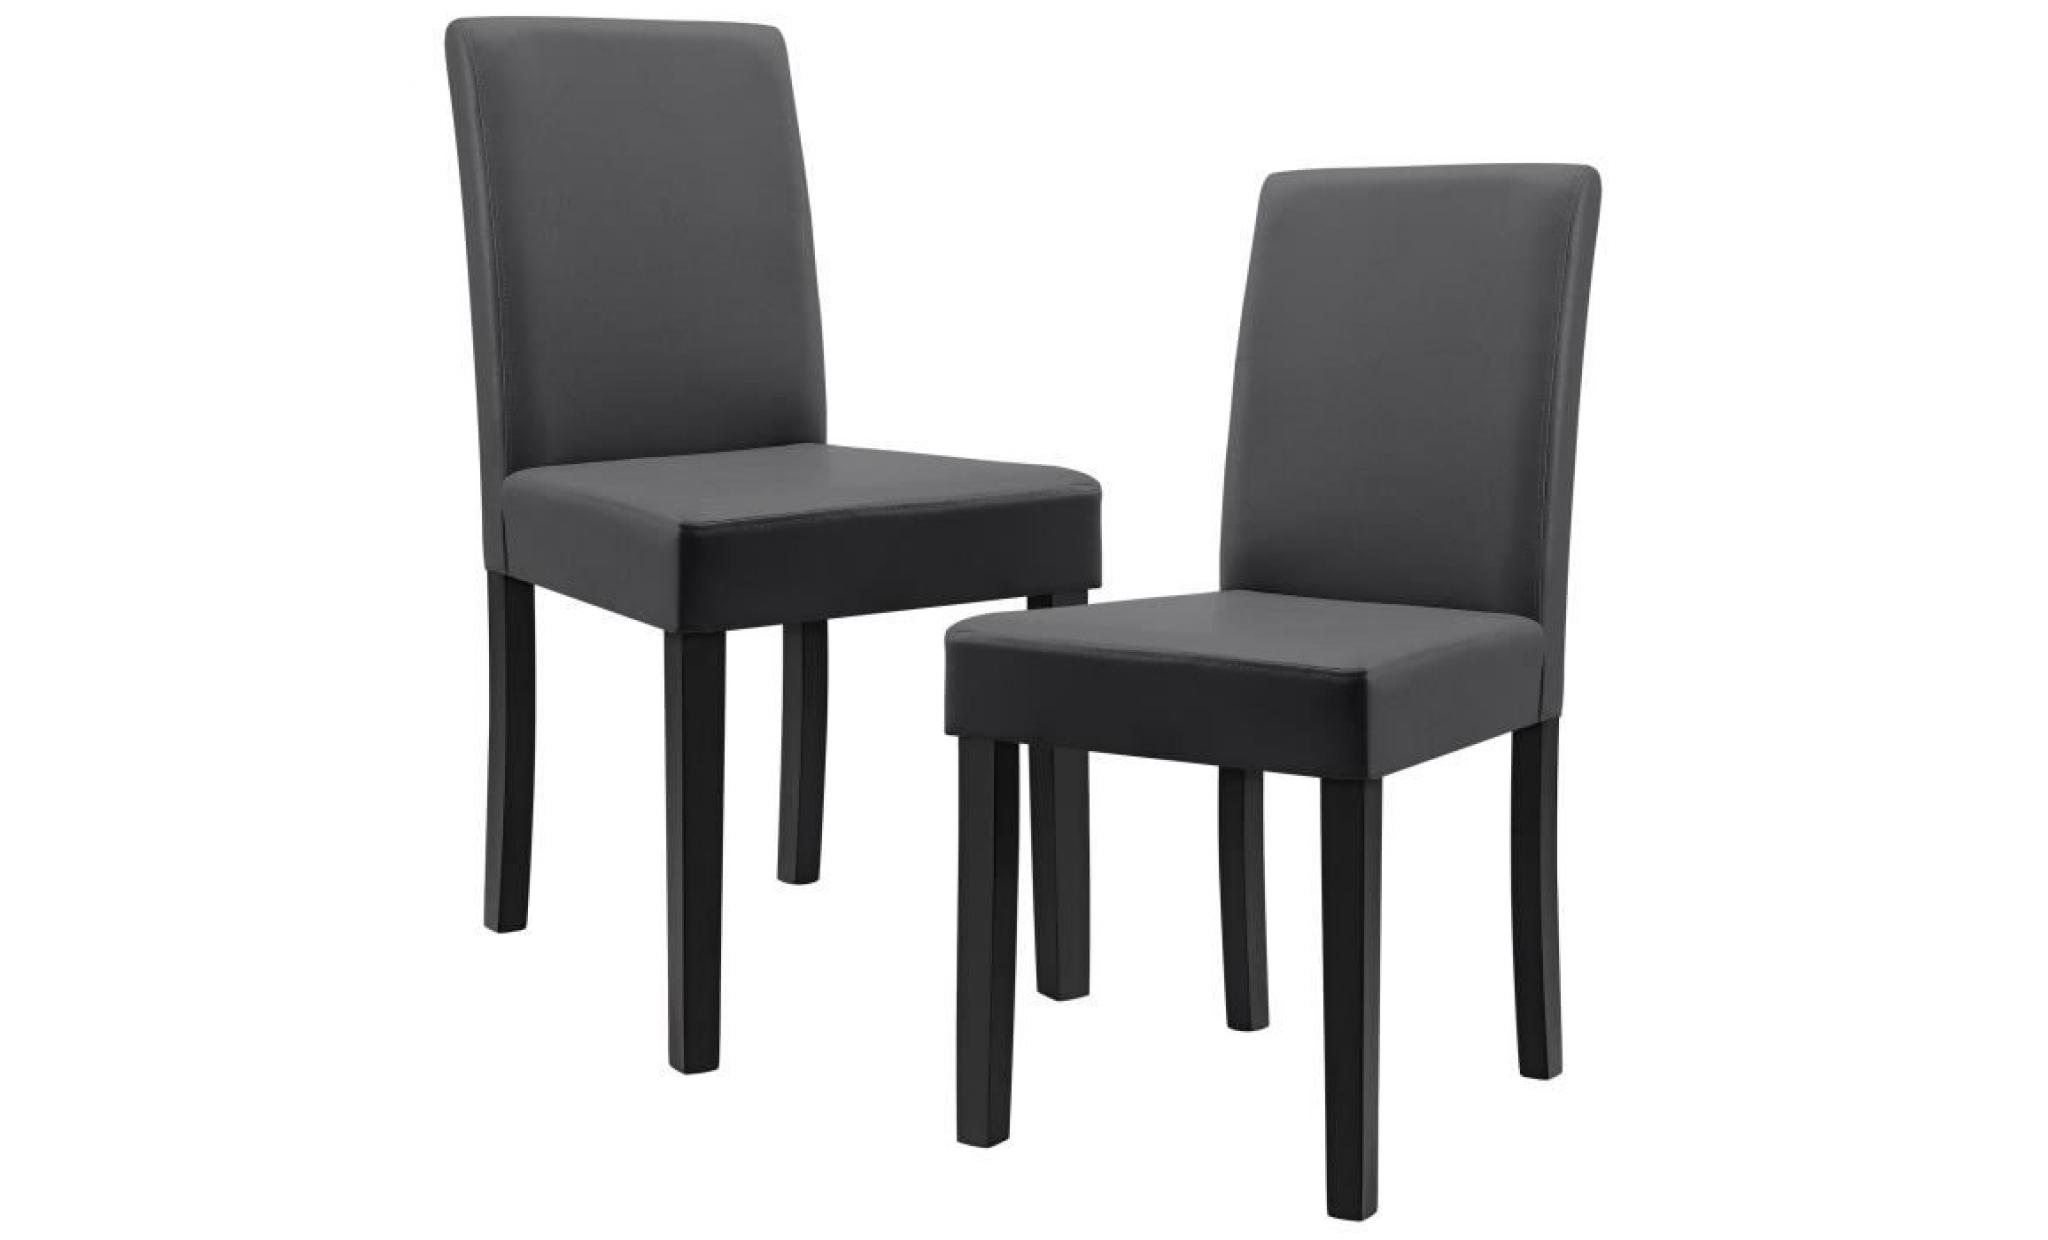 en.casa 6 chaises rembourrées (gris foncé) (de qualité supérieure) avec pieds en bois massif   housse en cuir synthétique   élégants pas cher